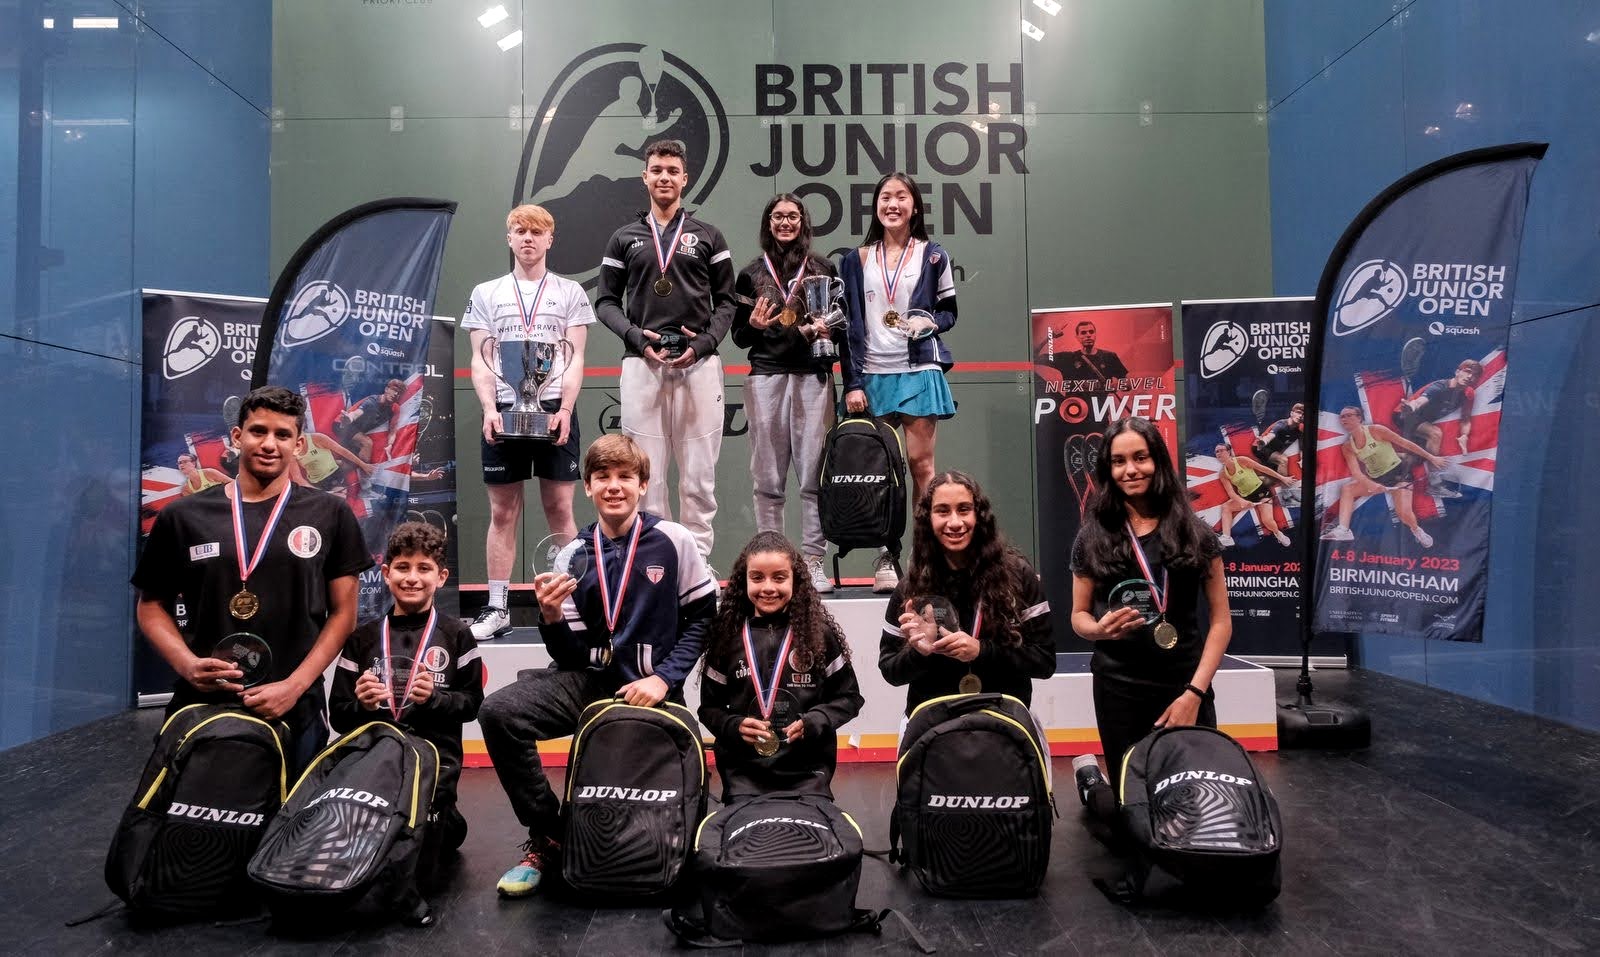 British Junior Open 2022